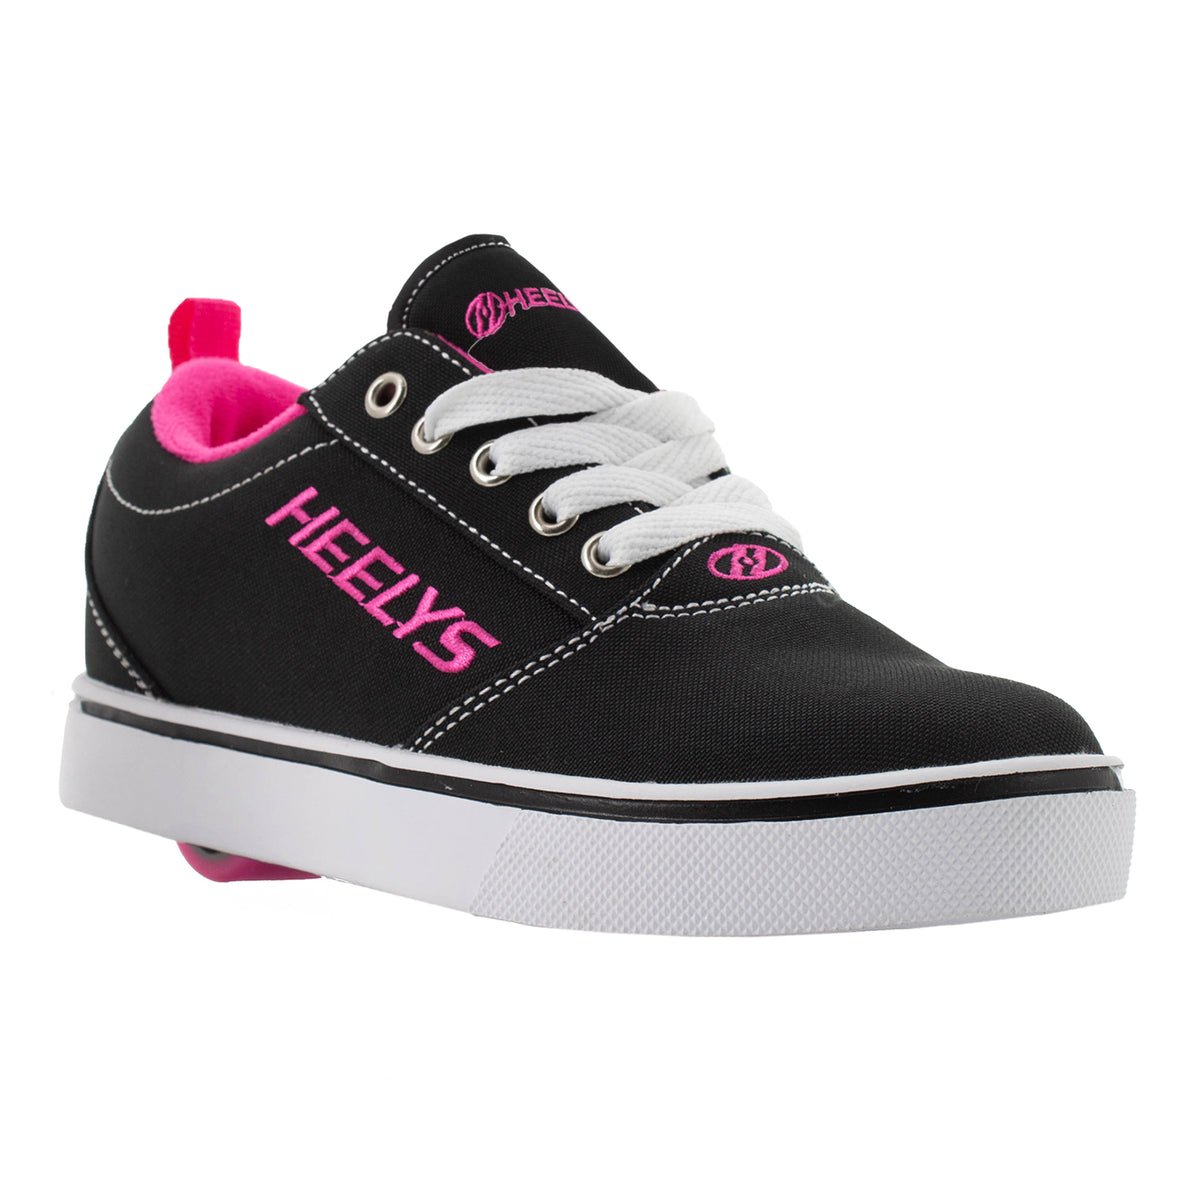 HEELYS Unisex Kids' Pro 20 Wheeled Shoe Black/White/Pink - HE100760H BLACK/WHITE/PINK - BLACK/WHITE/PINK, 7